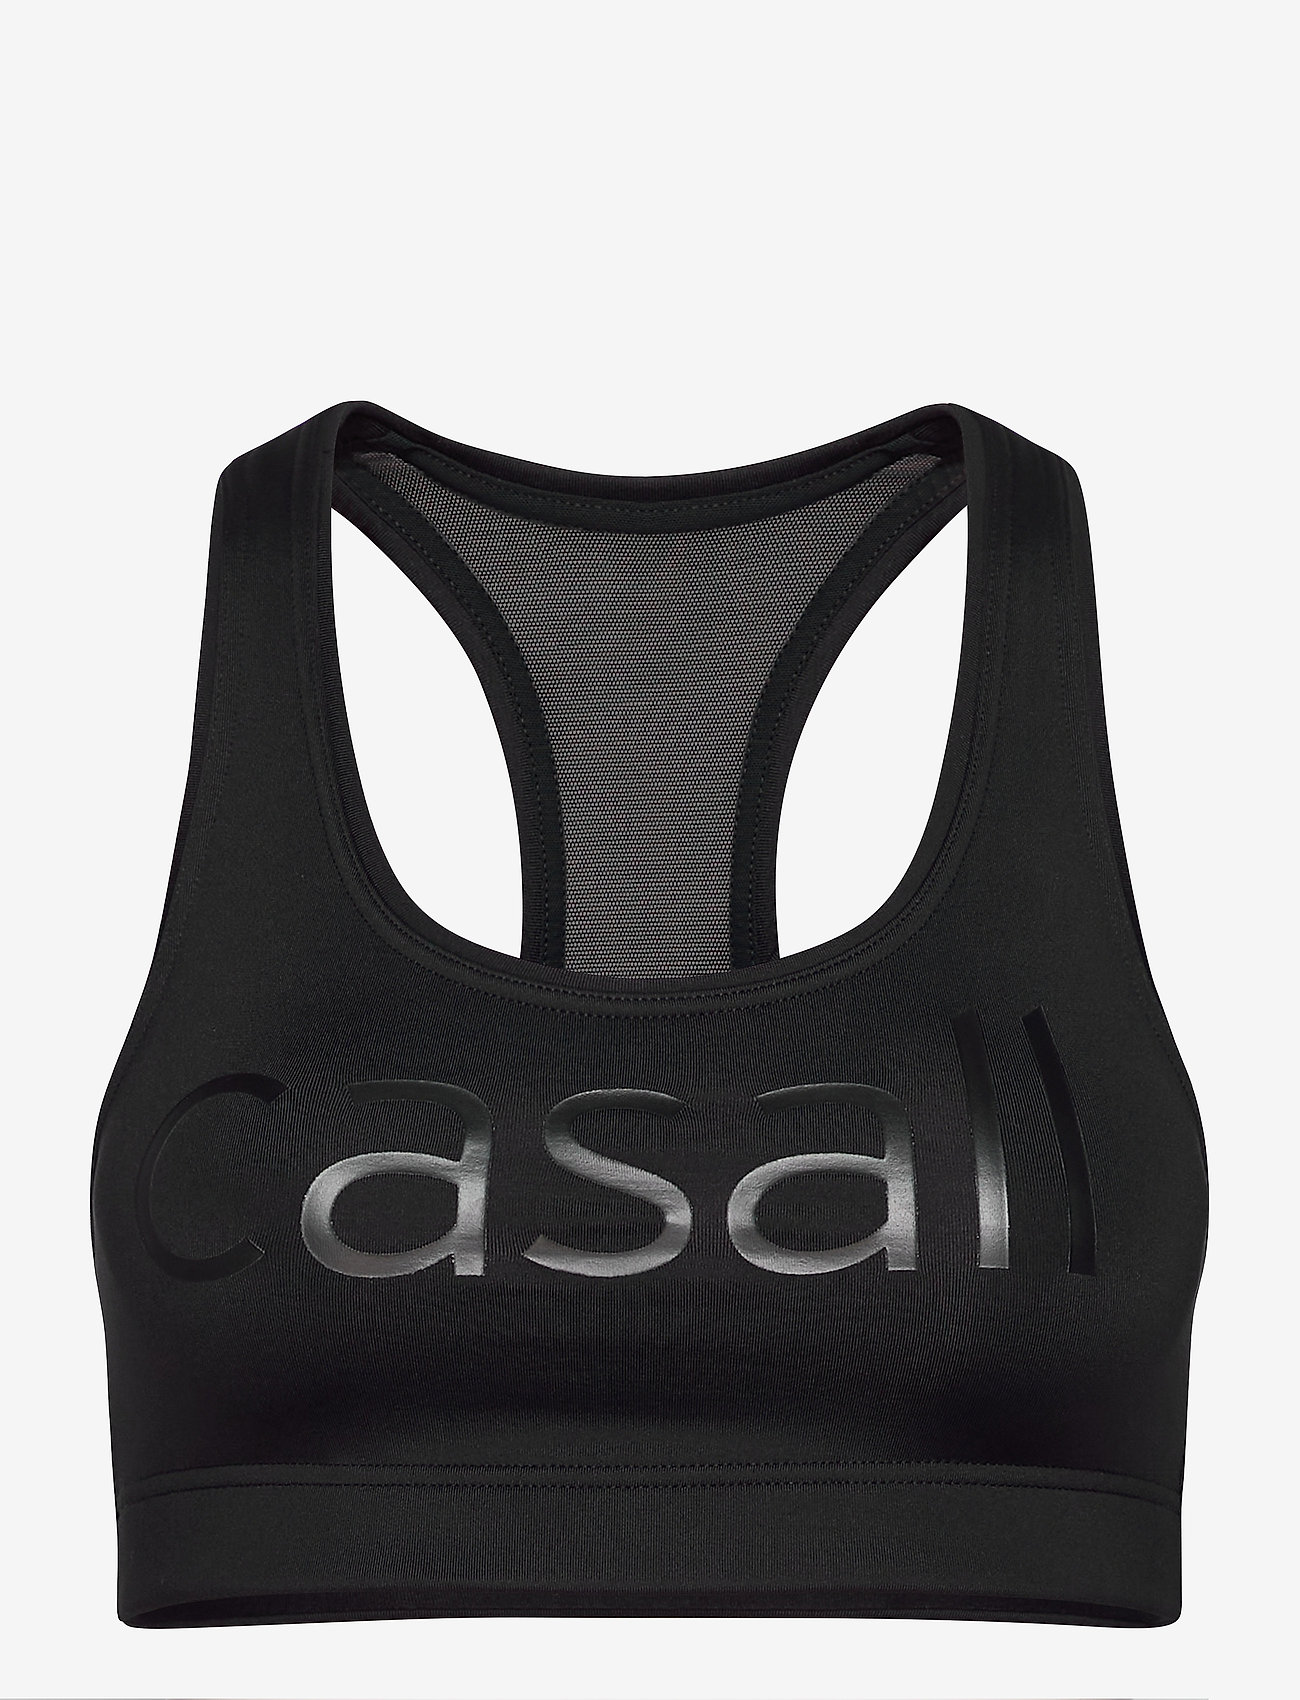 Casall - Iconic wool sports bra - wysokie - black logo - 1